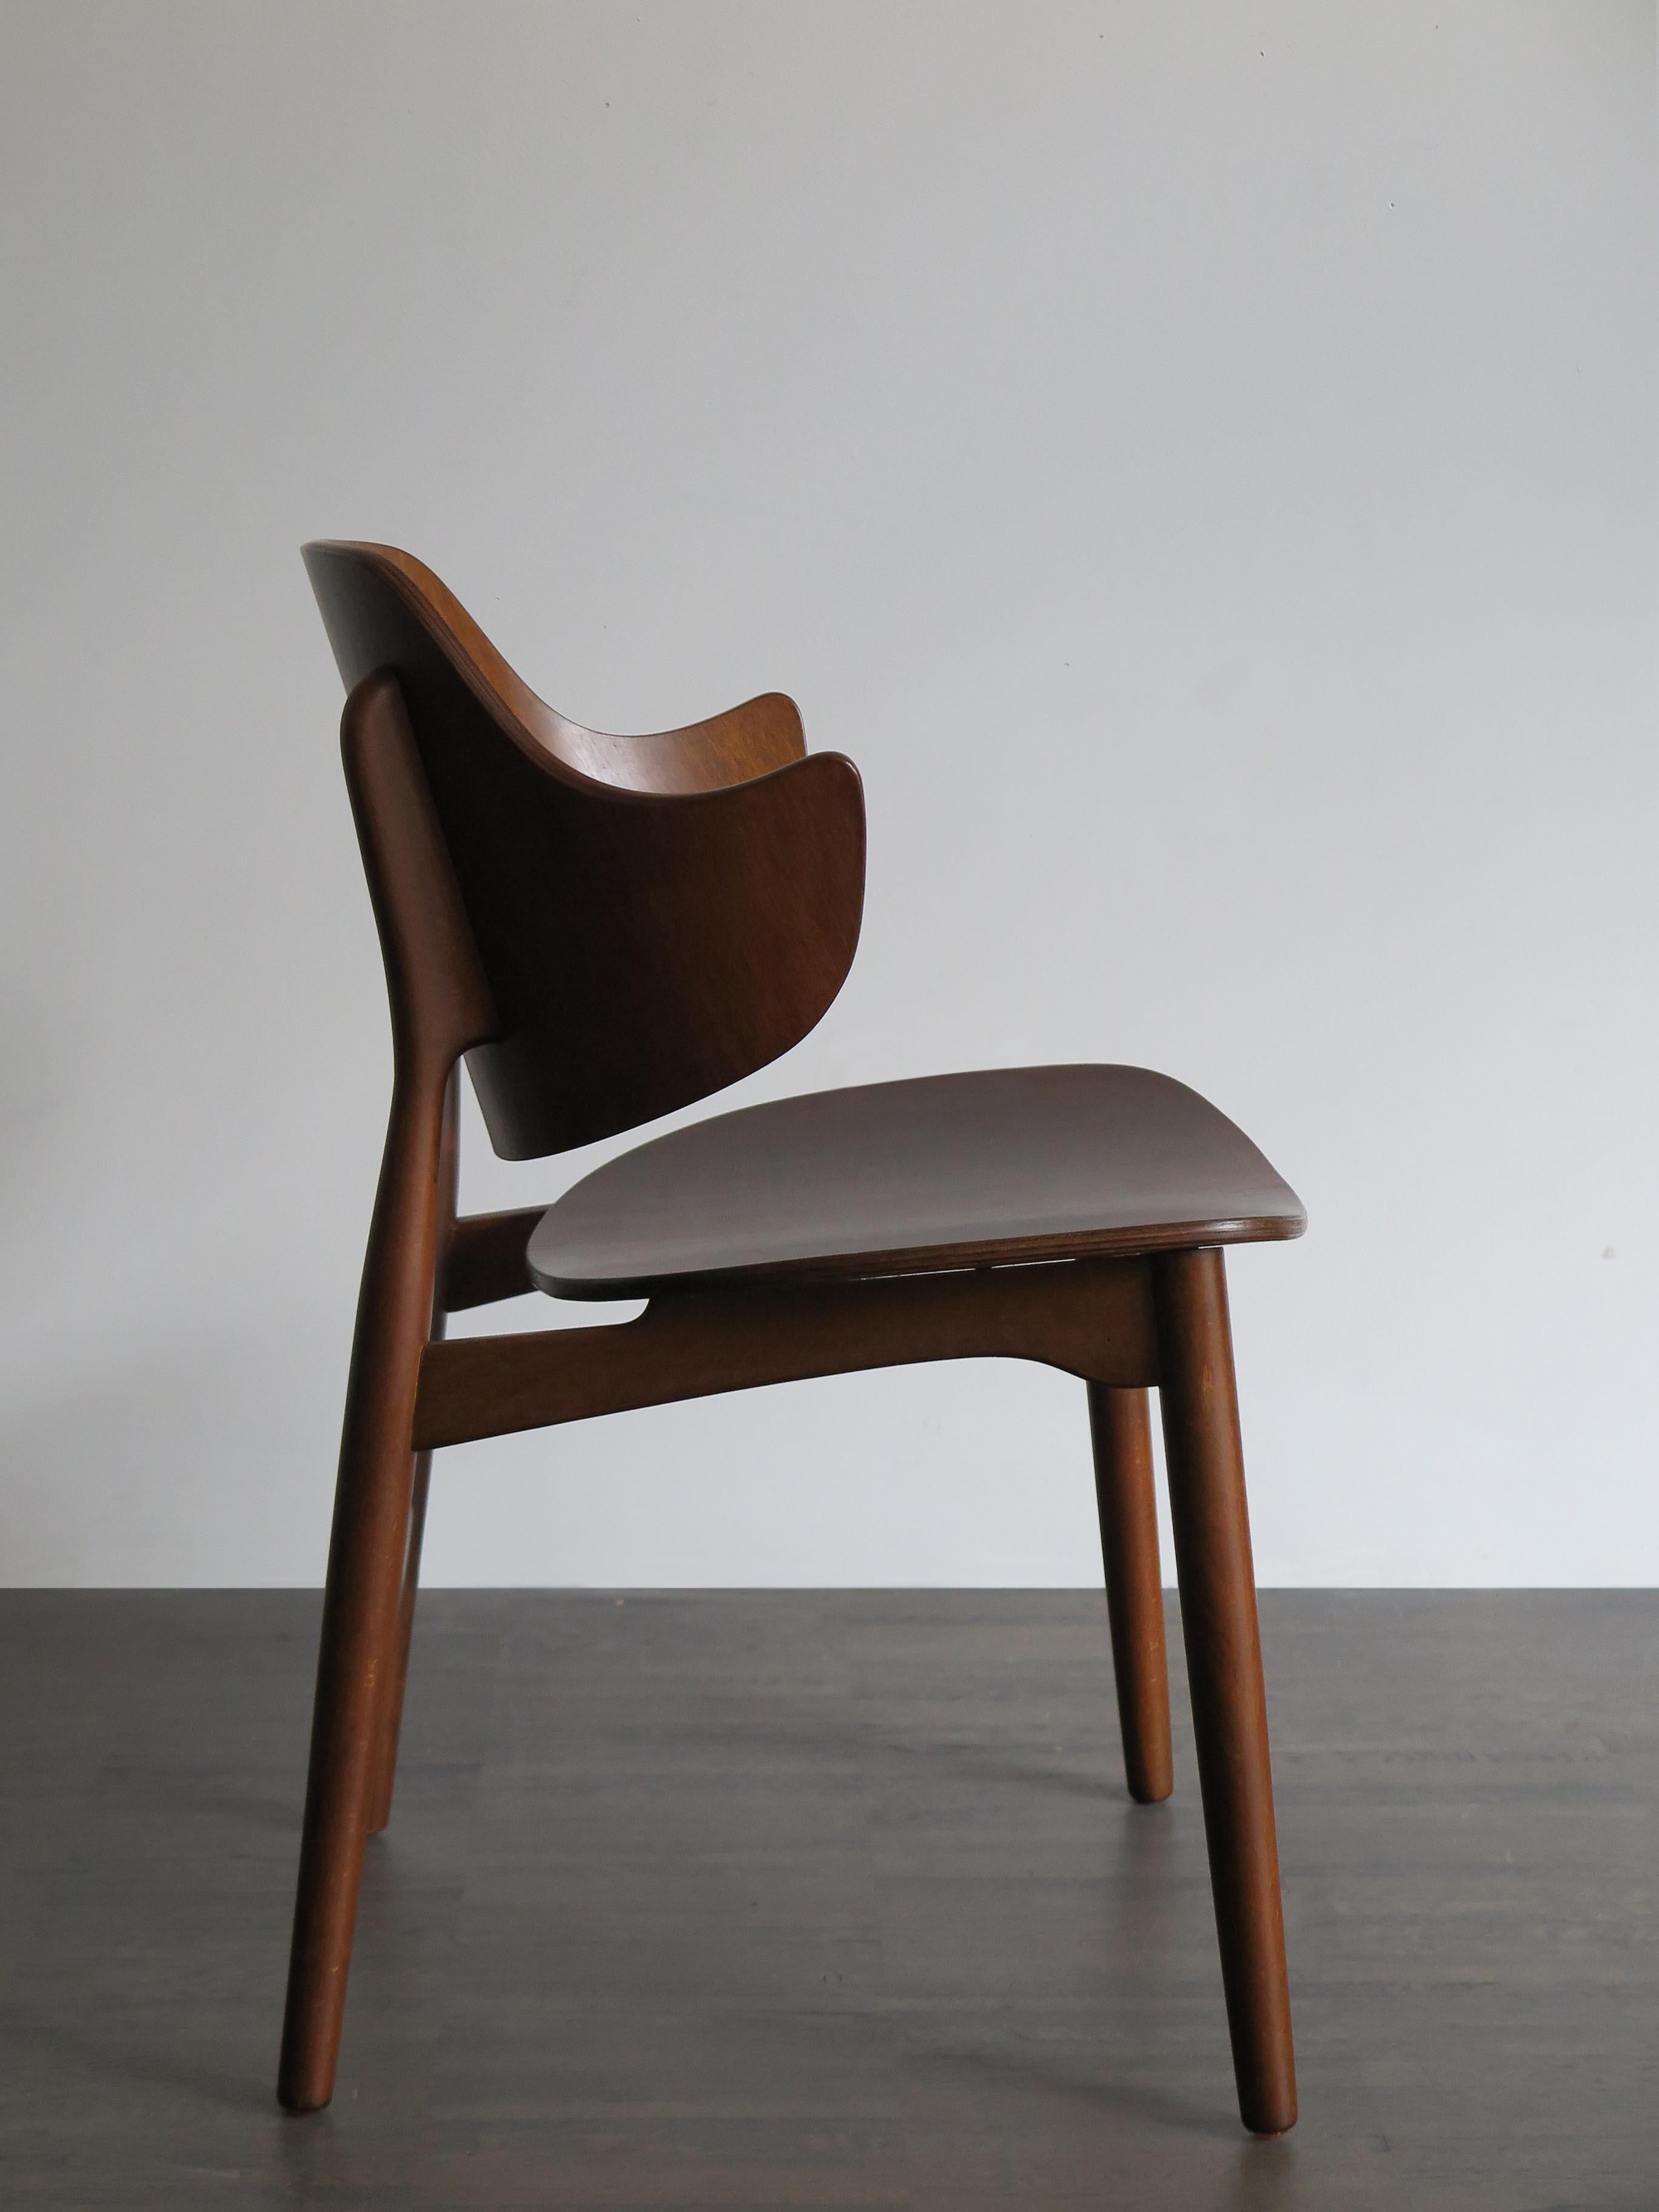 Veneer Jens Hjorth Scandinavian Midcentury Modern Wood Chairs Armchairs, 1950s